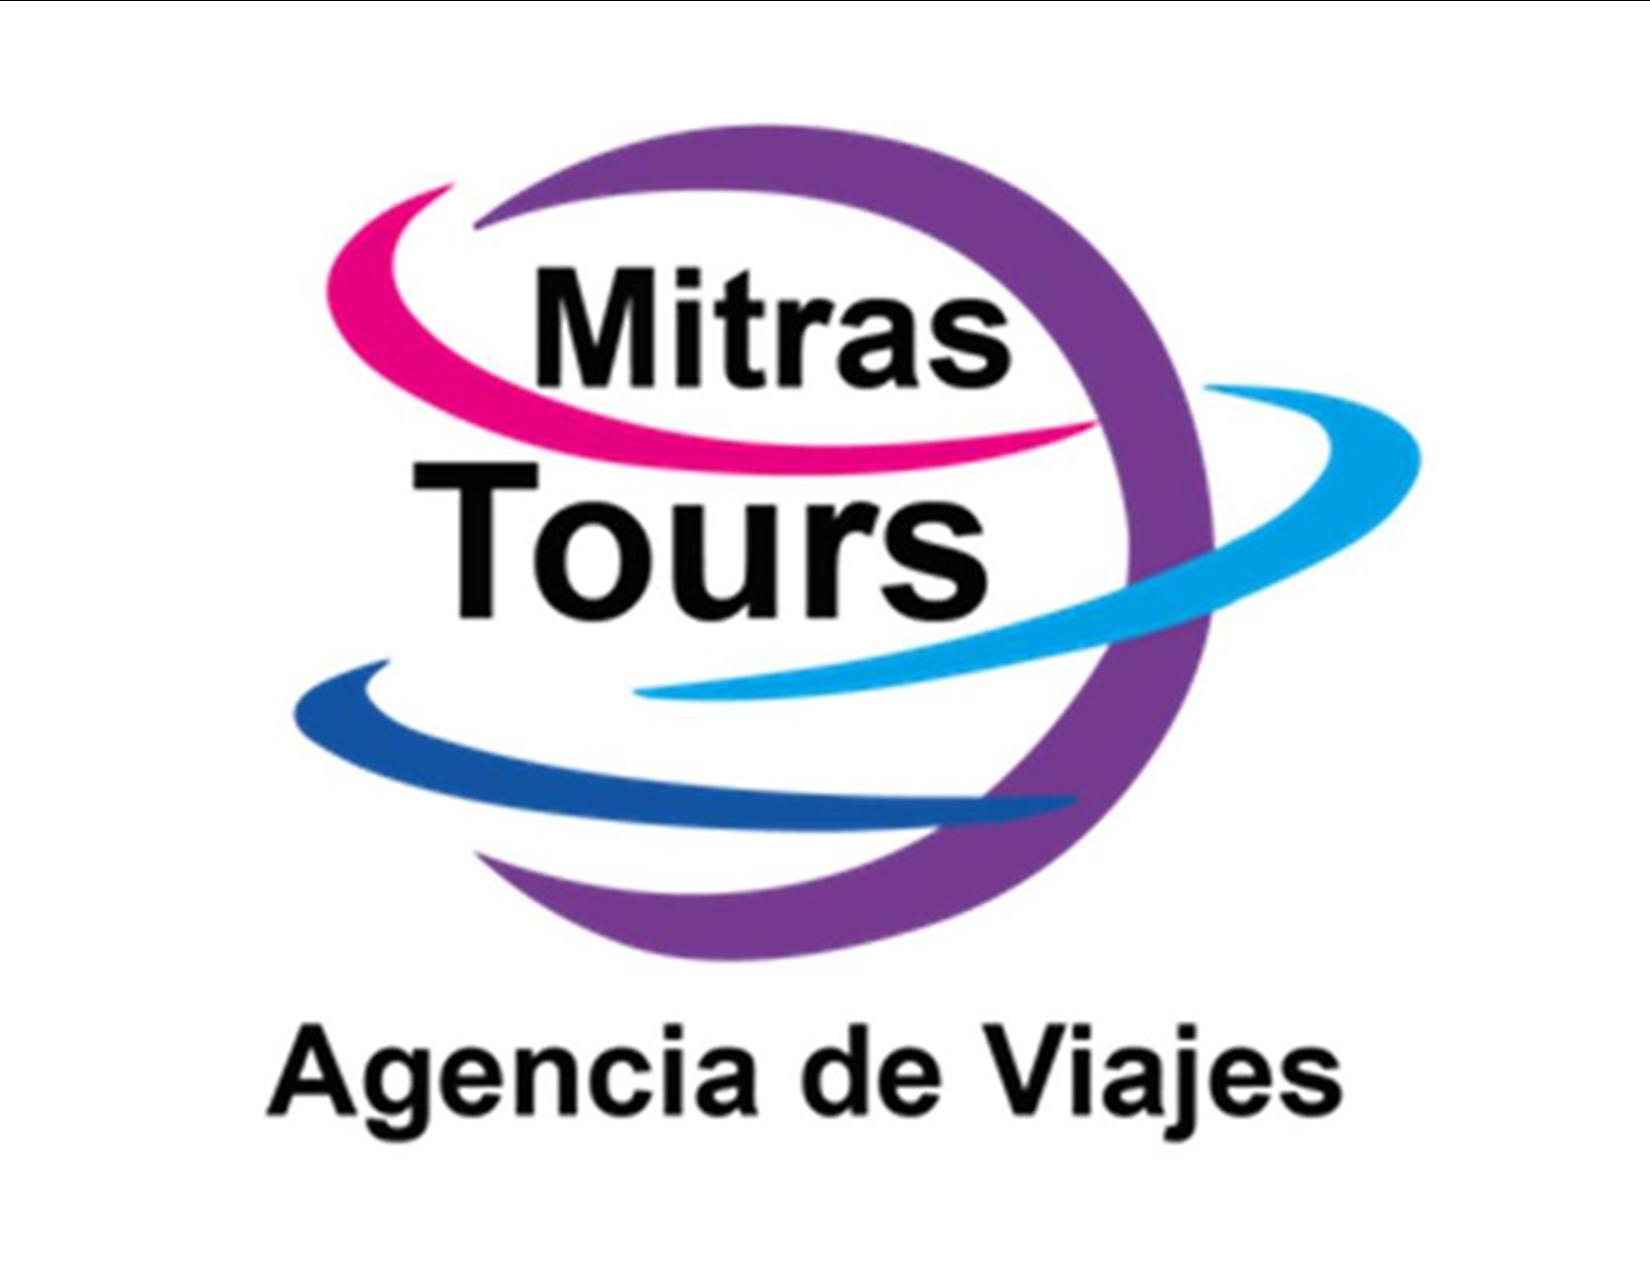 MITRAS TOURS